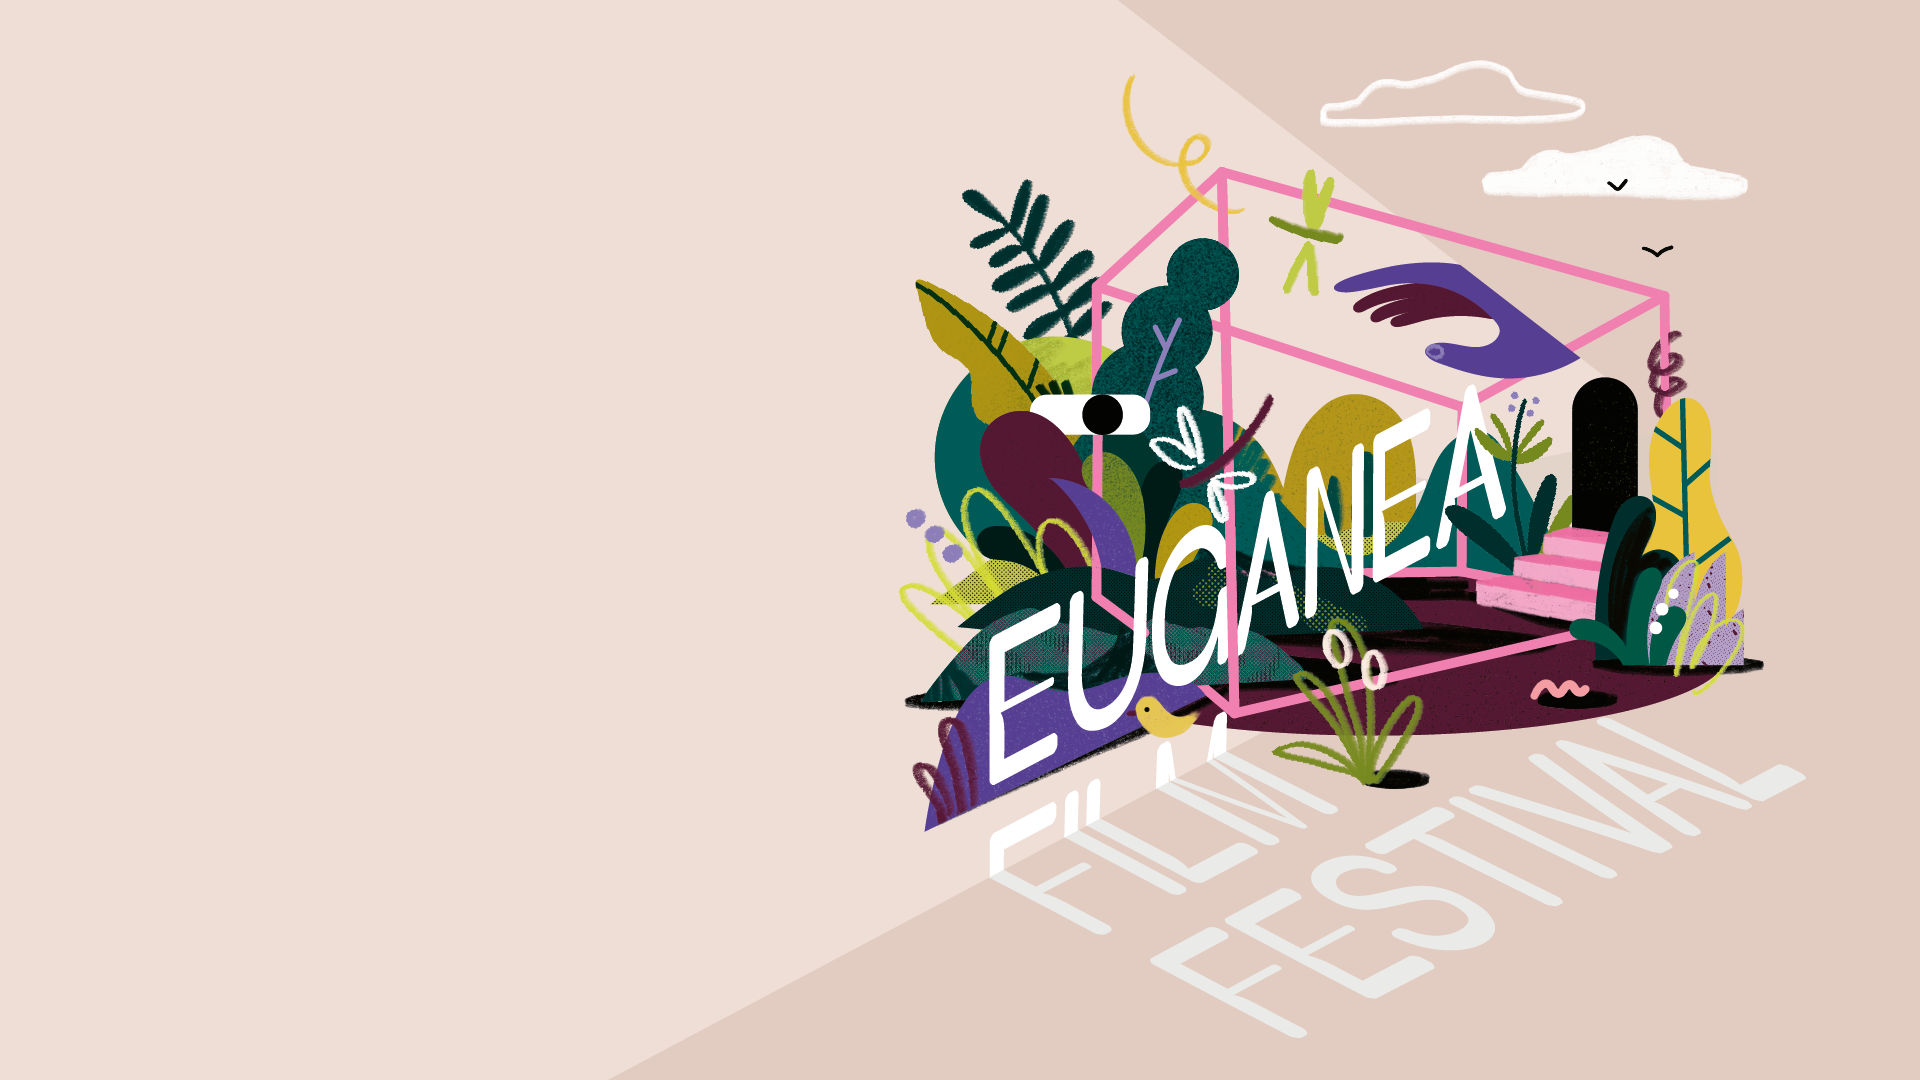 Euganea Film Festival